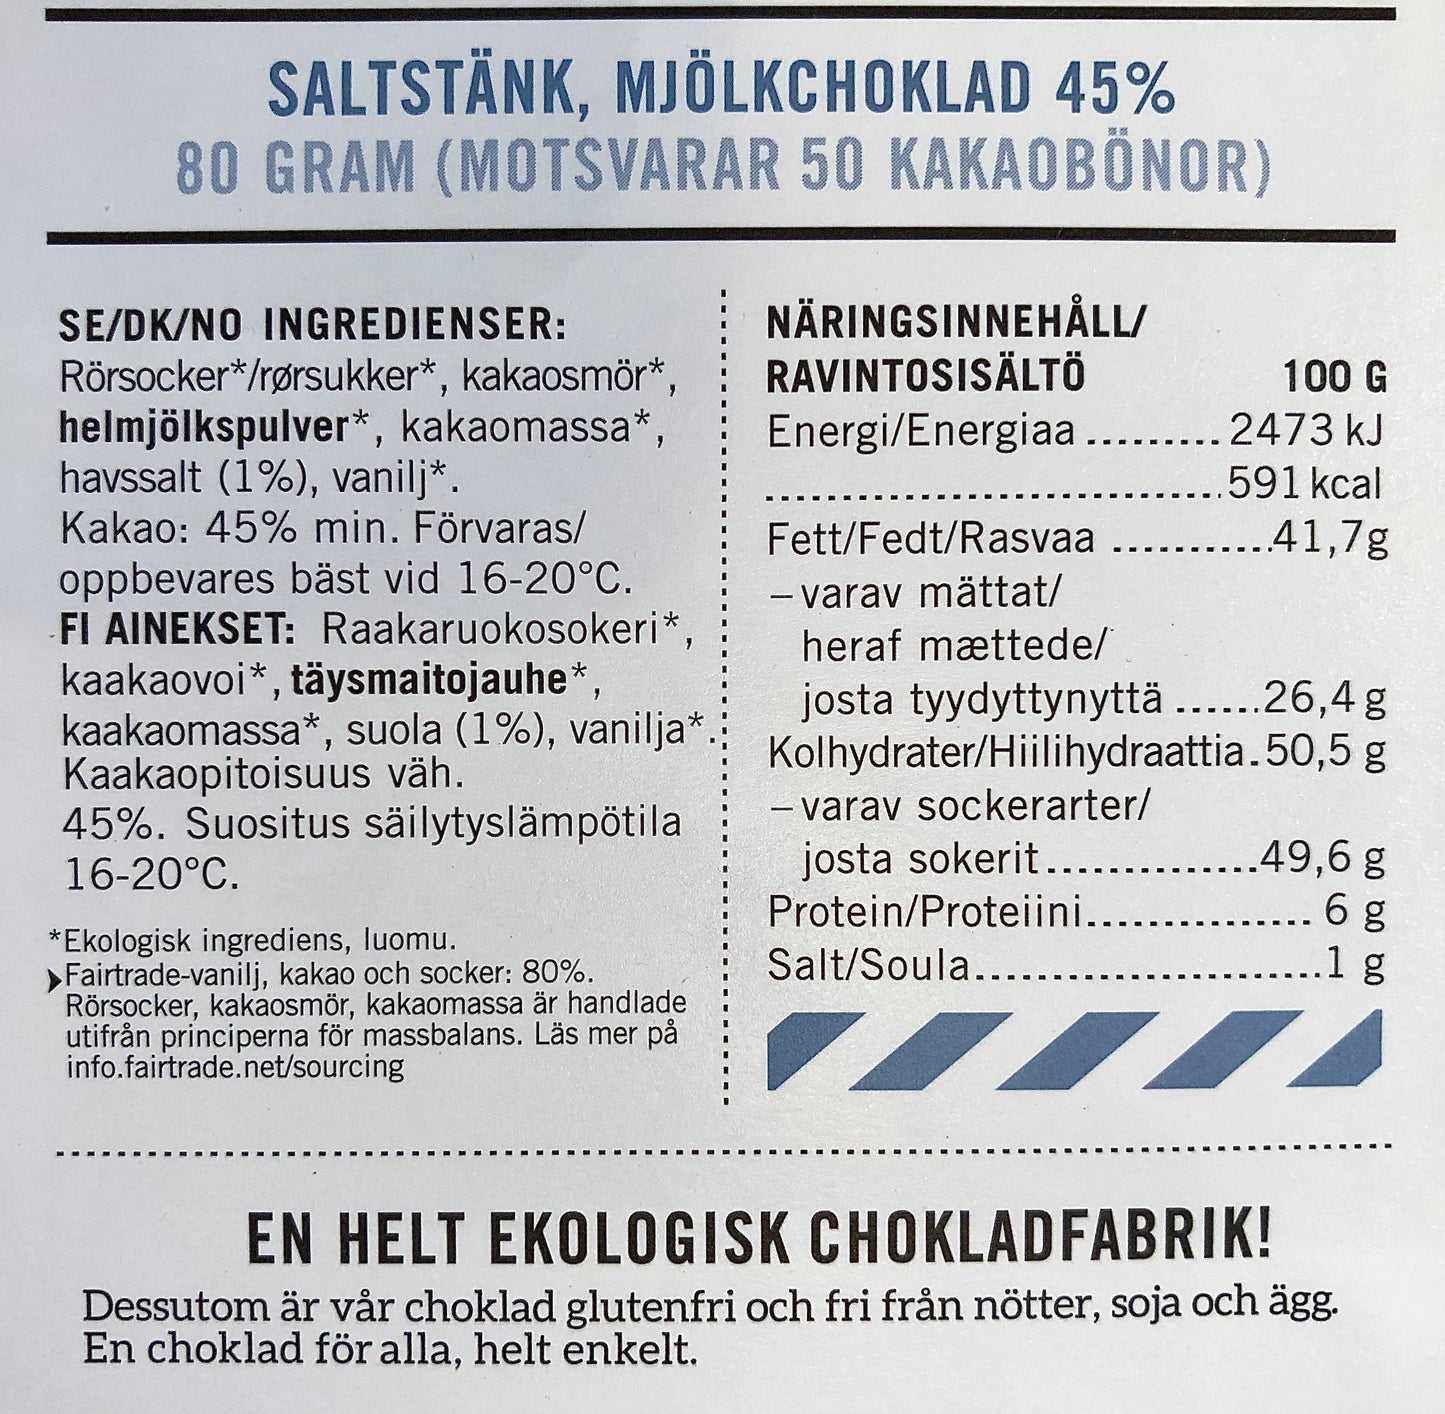 Malmö Choklad Saltstänk